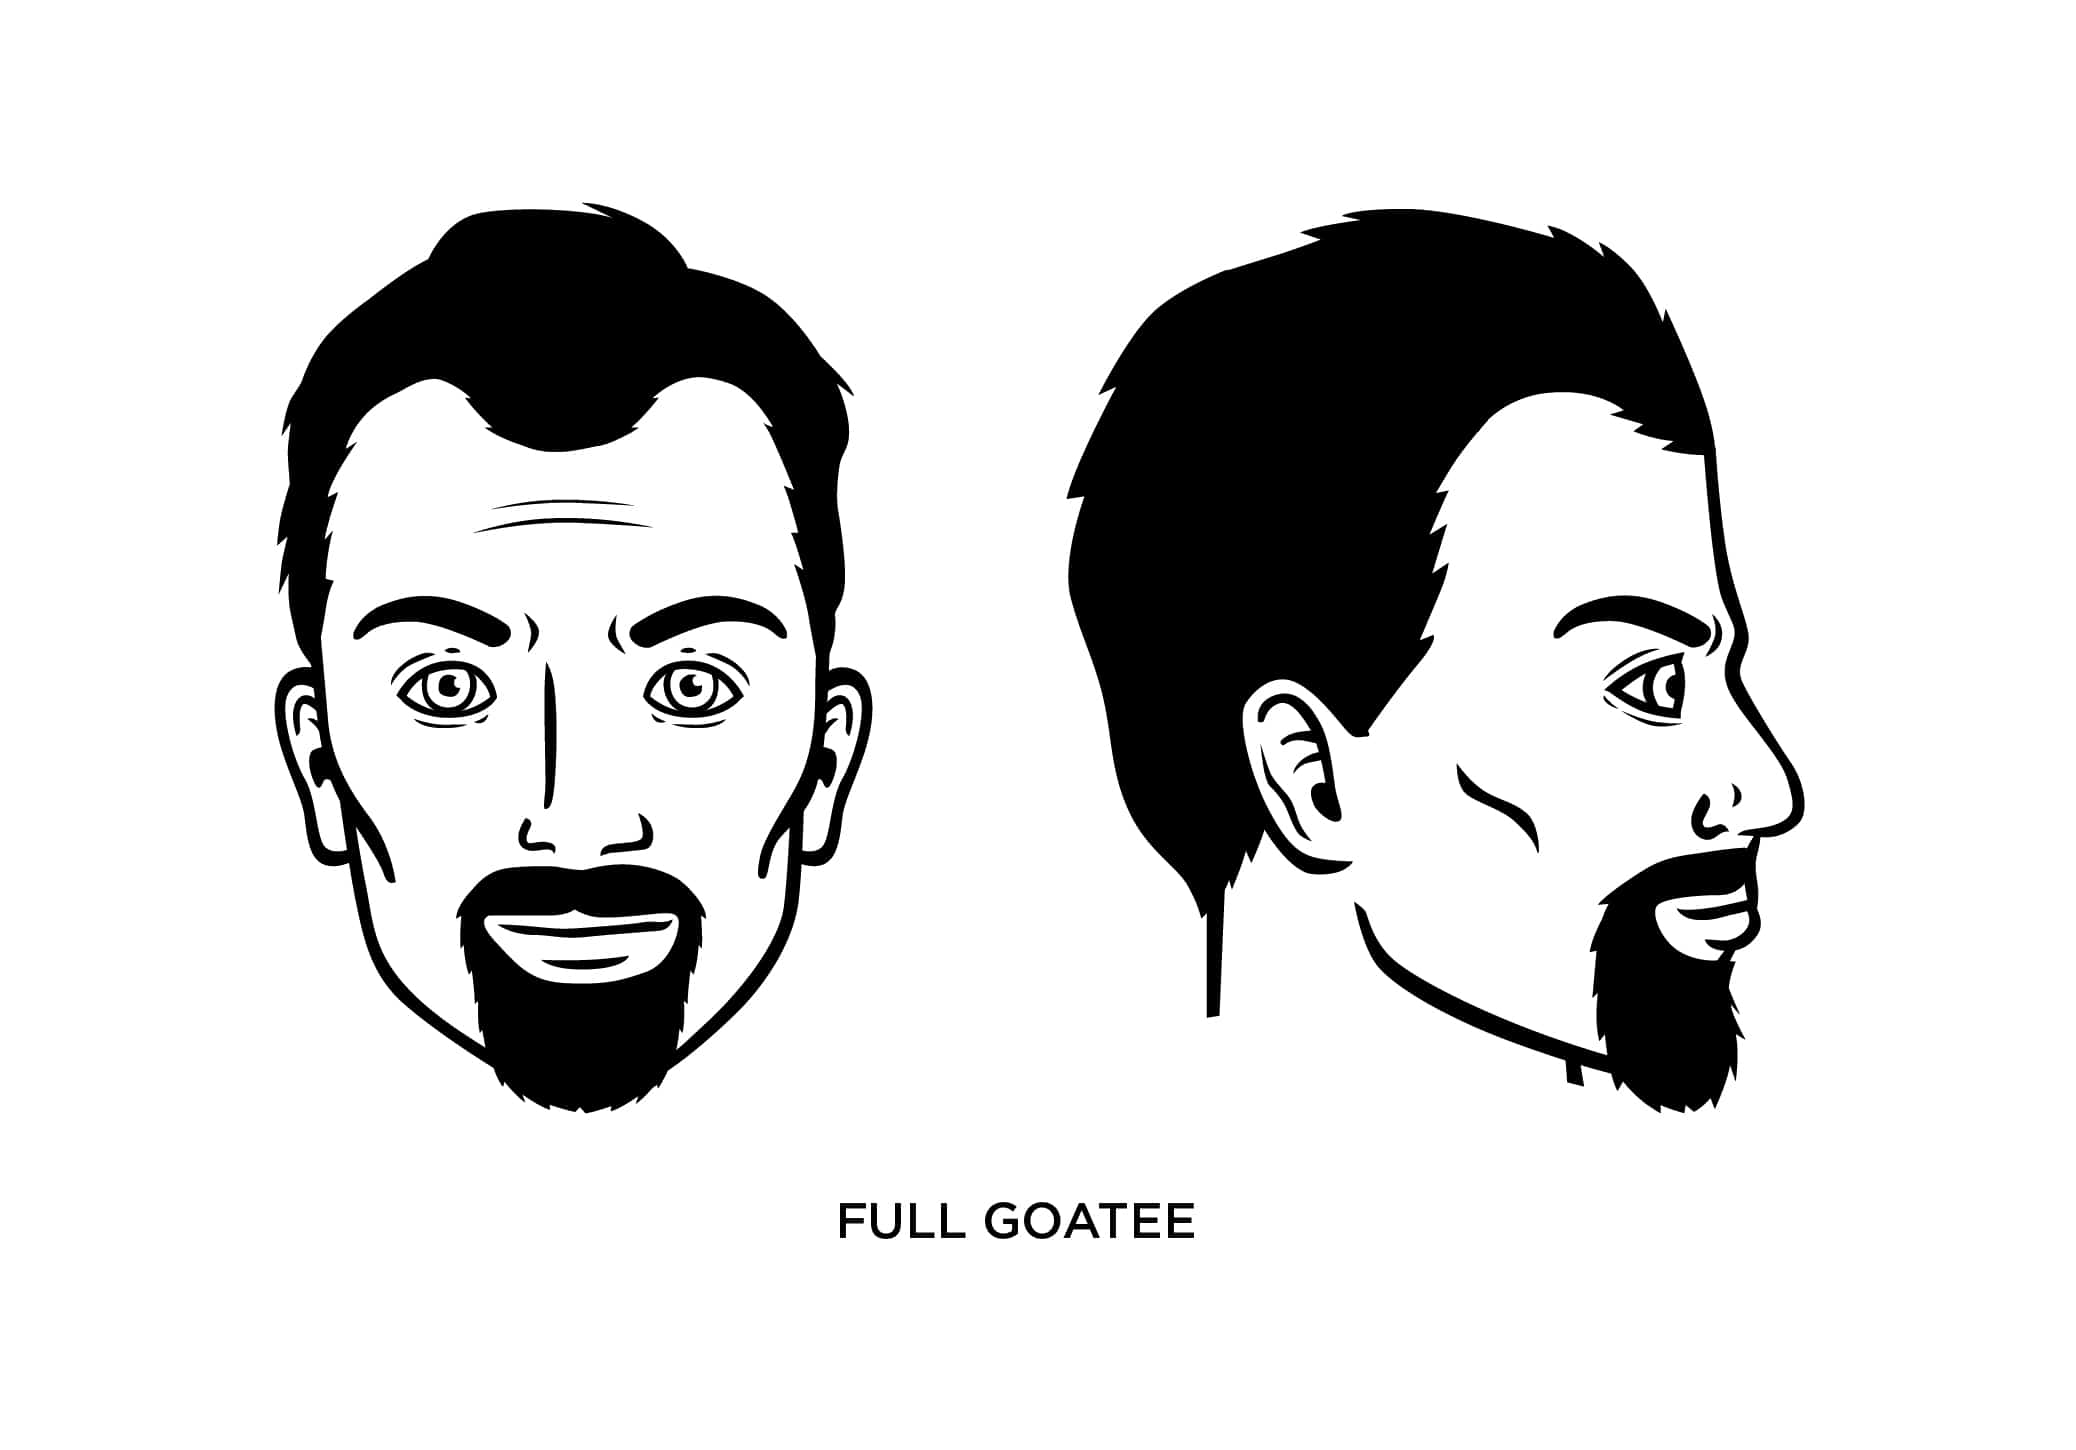 Full goatee